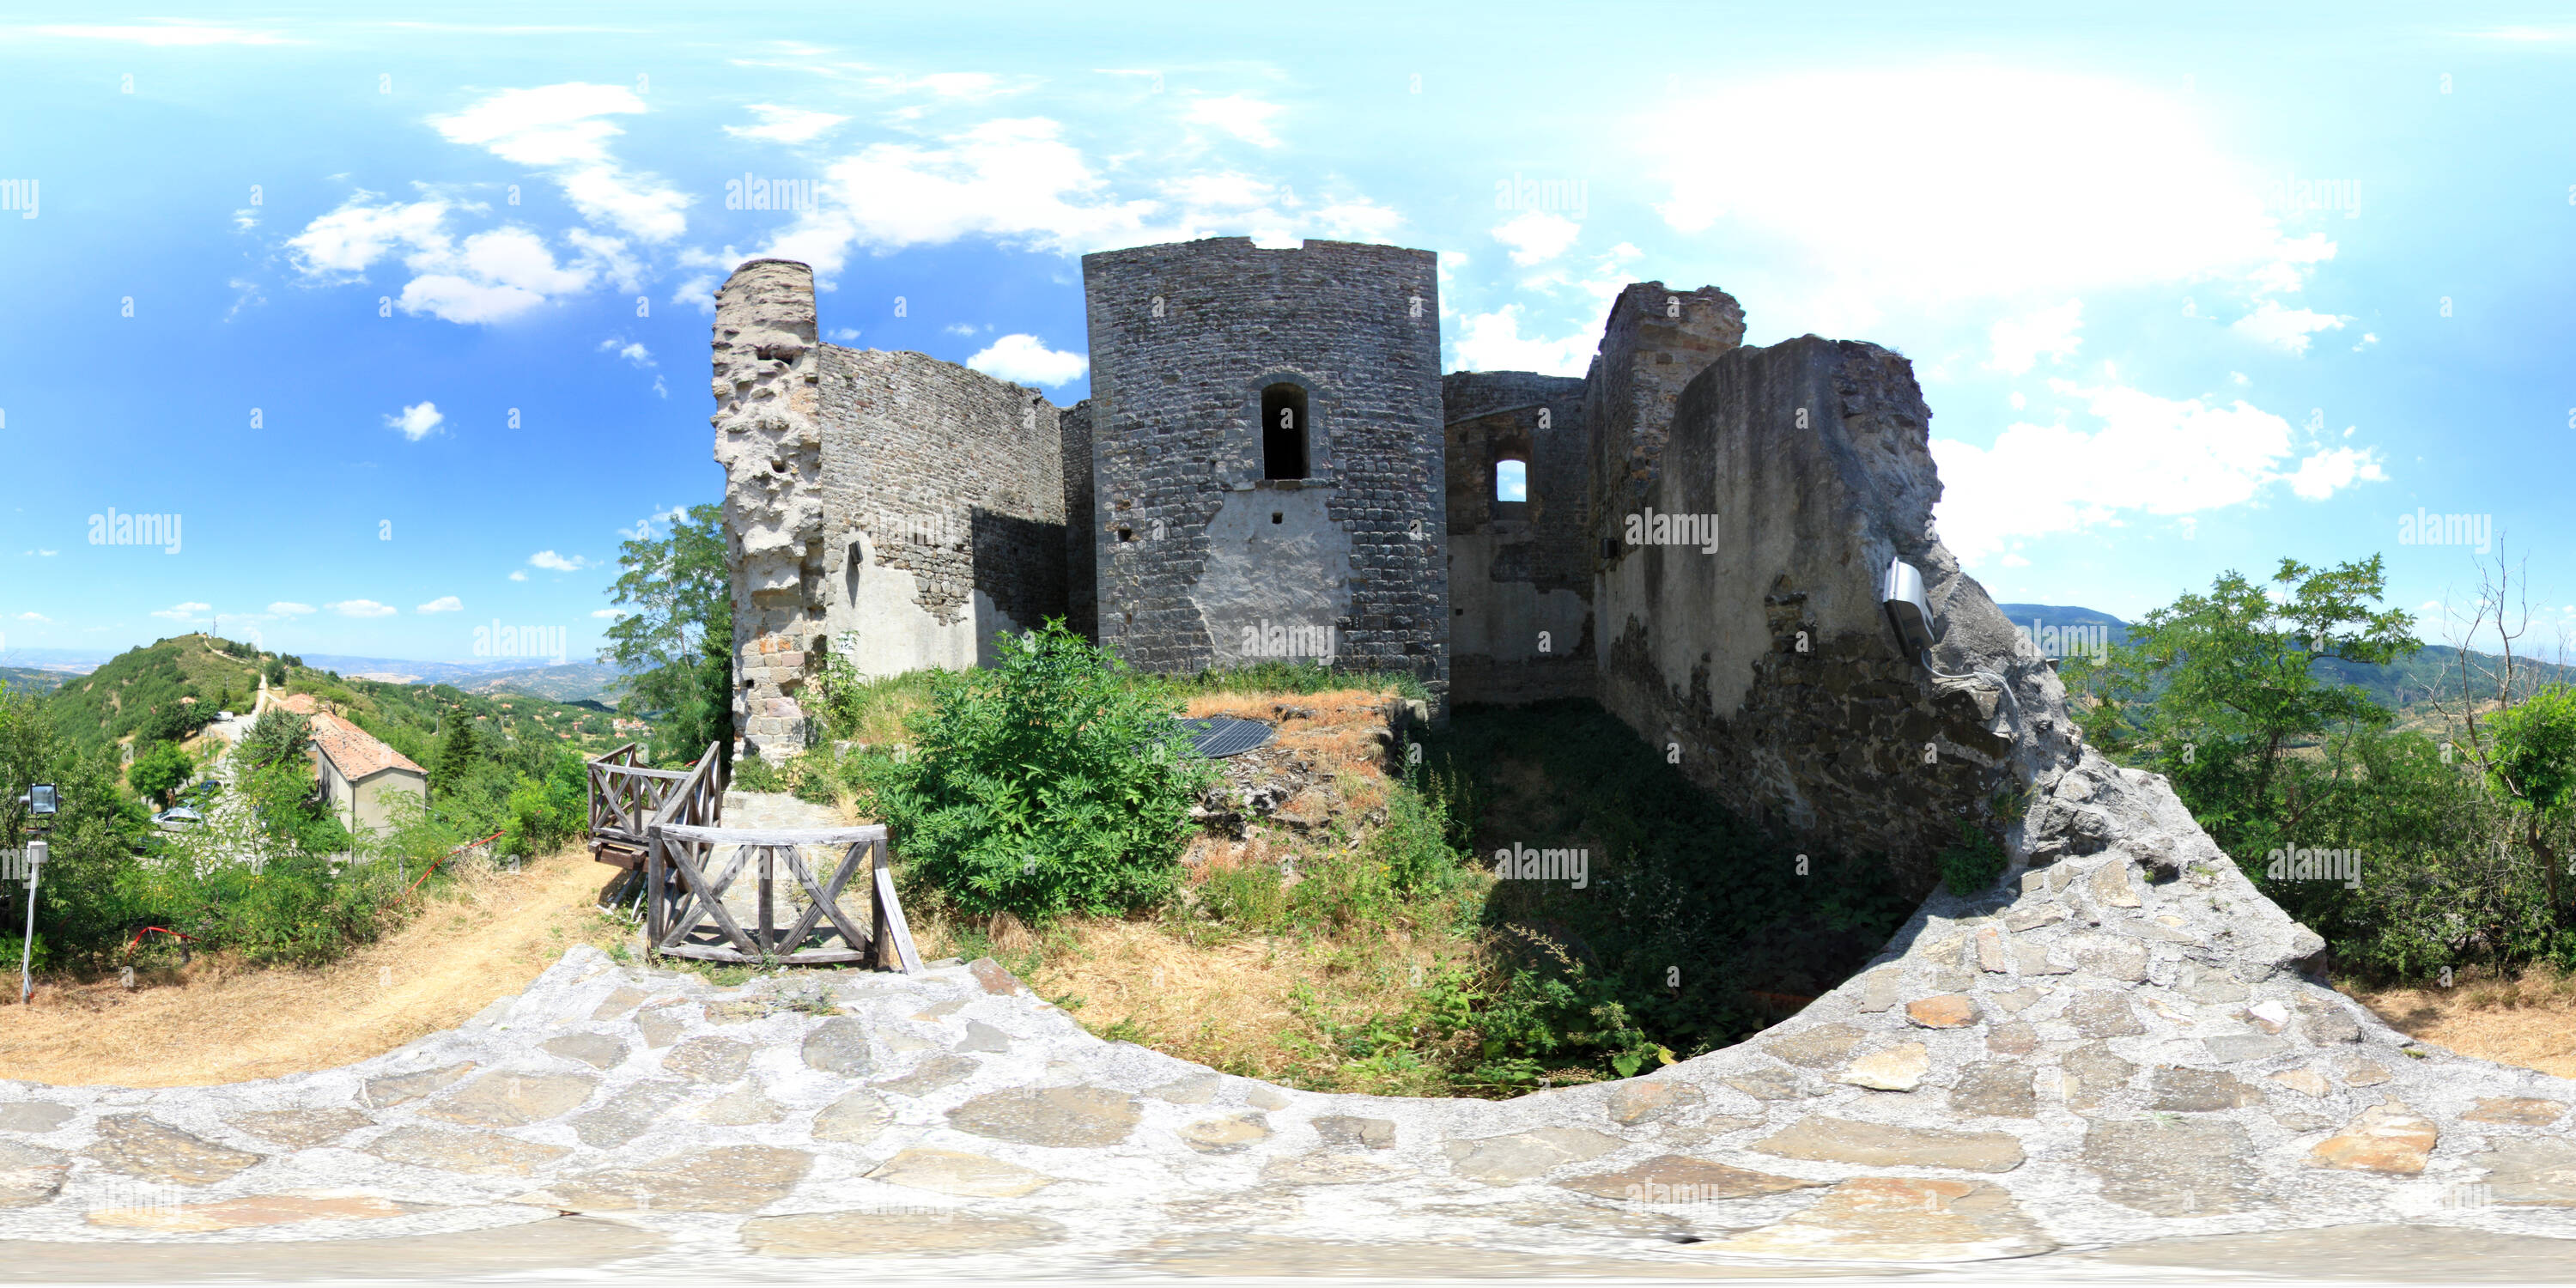 Visualizzazione panoramica a 360 gradi di Montelaterone-Castle